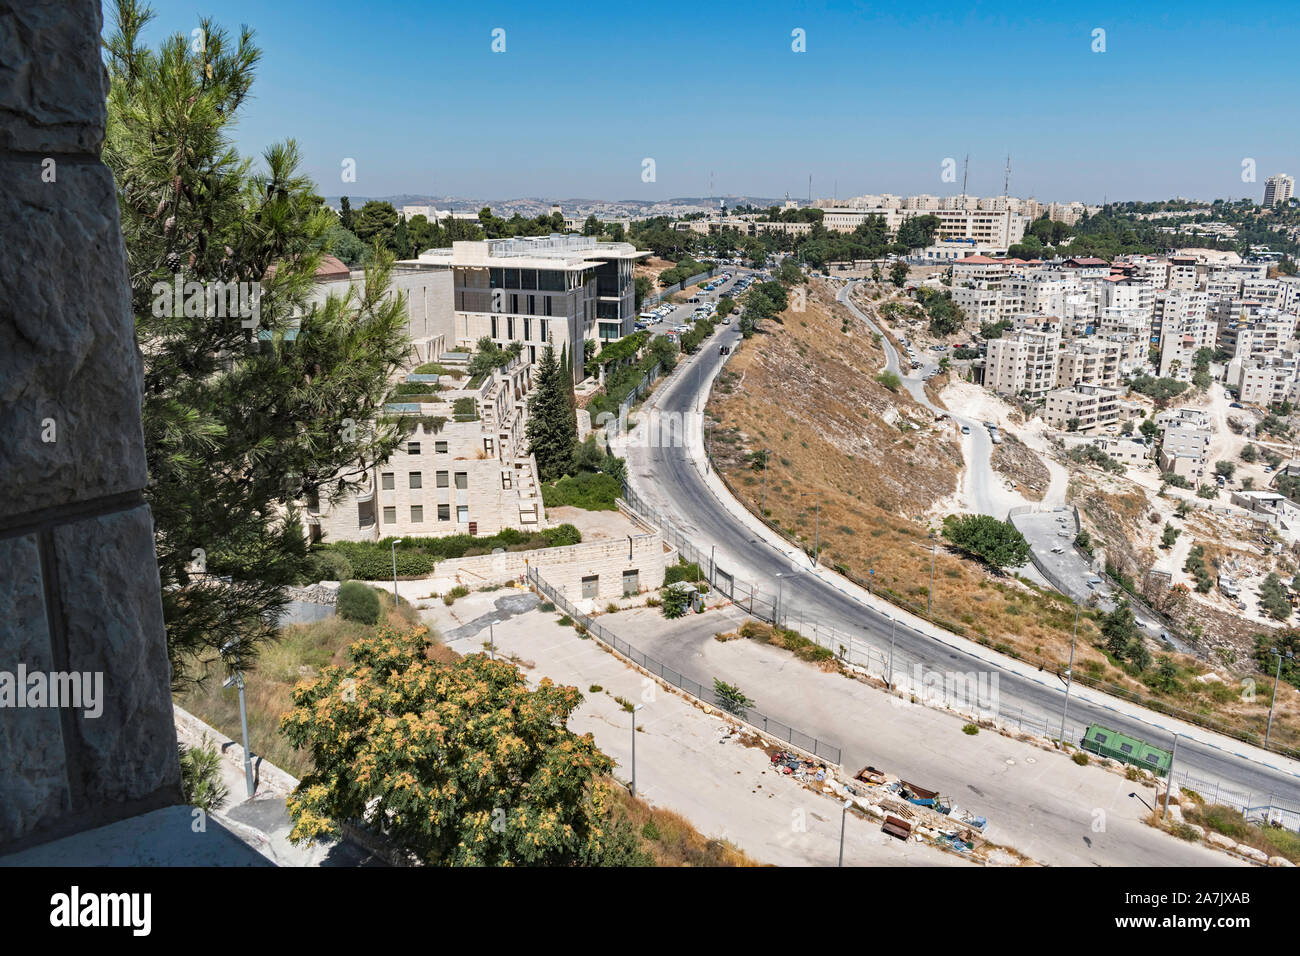 La Hebrew University hadassah campus ospedaliero e due quartieri palestinese sul Monte Scopus a Gerusalemme est dall'arte edificio scolastico Foto Stock